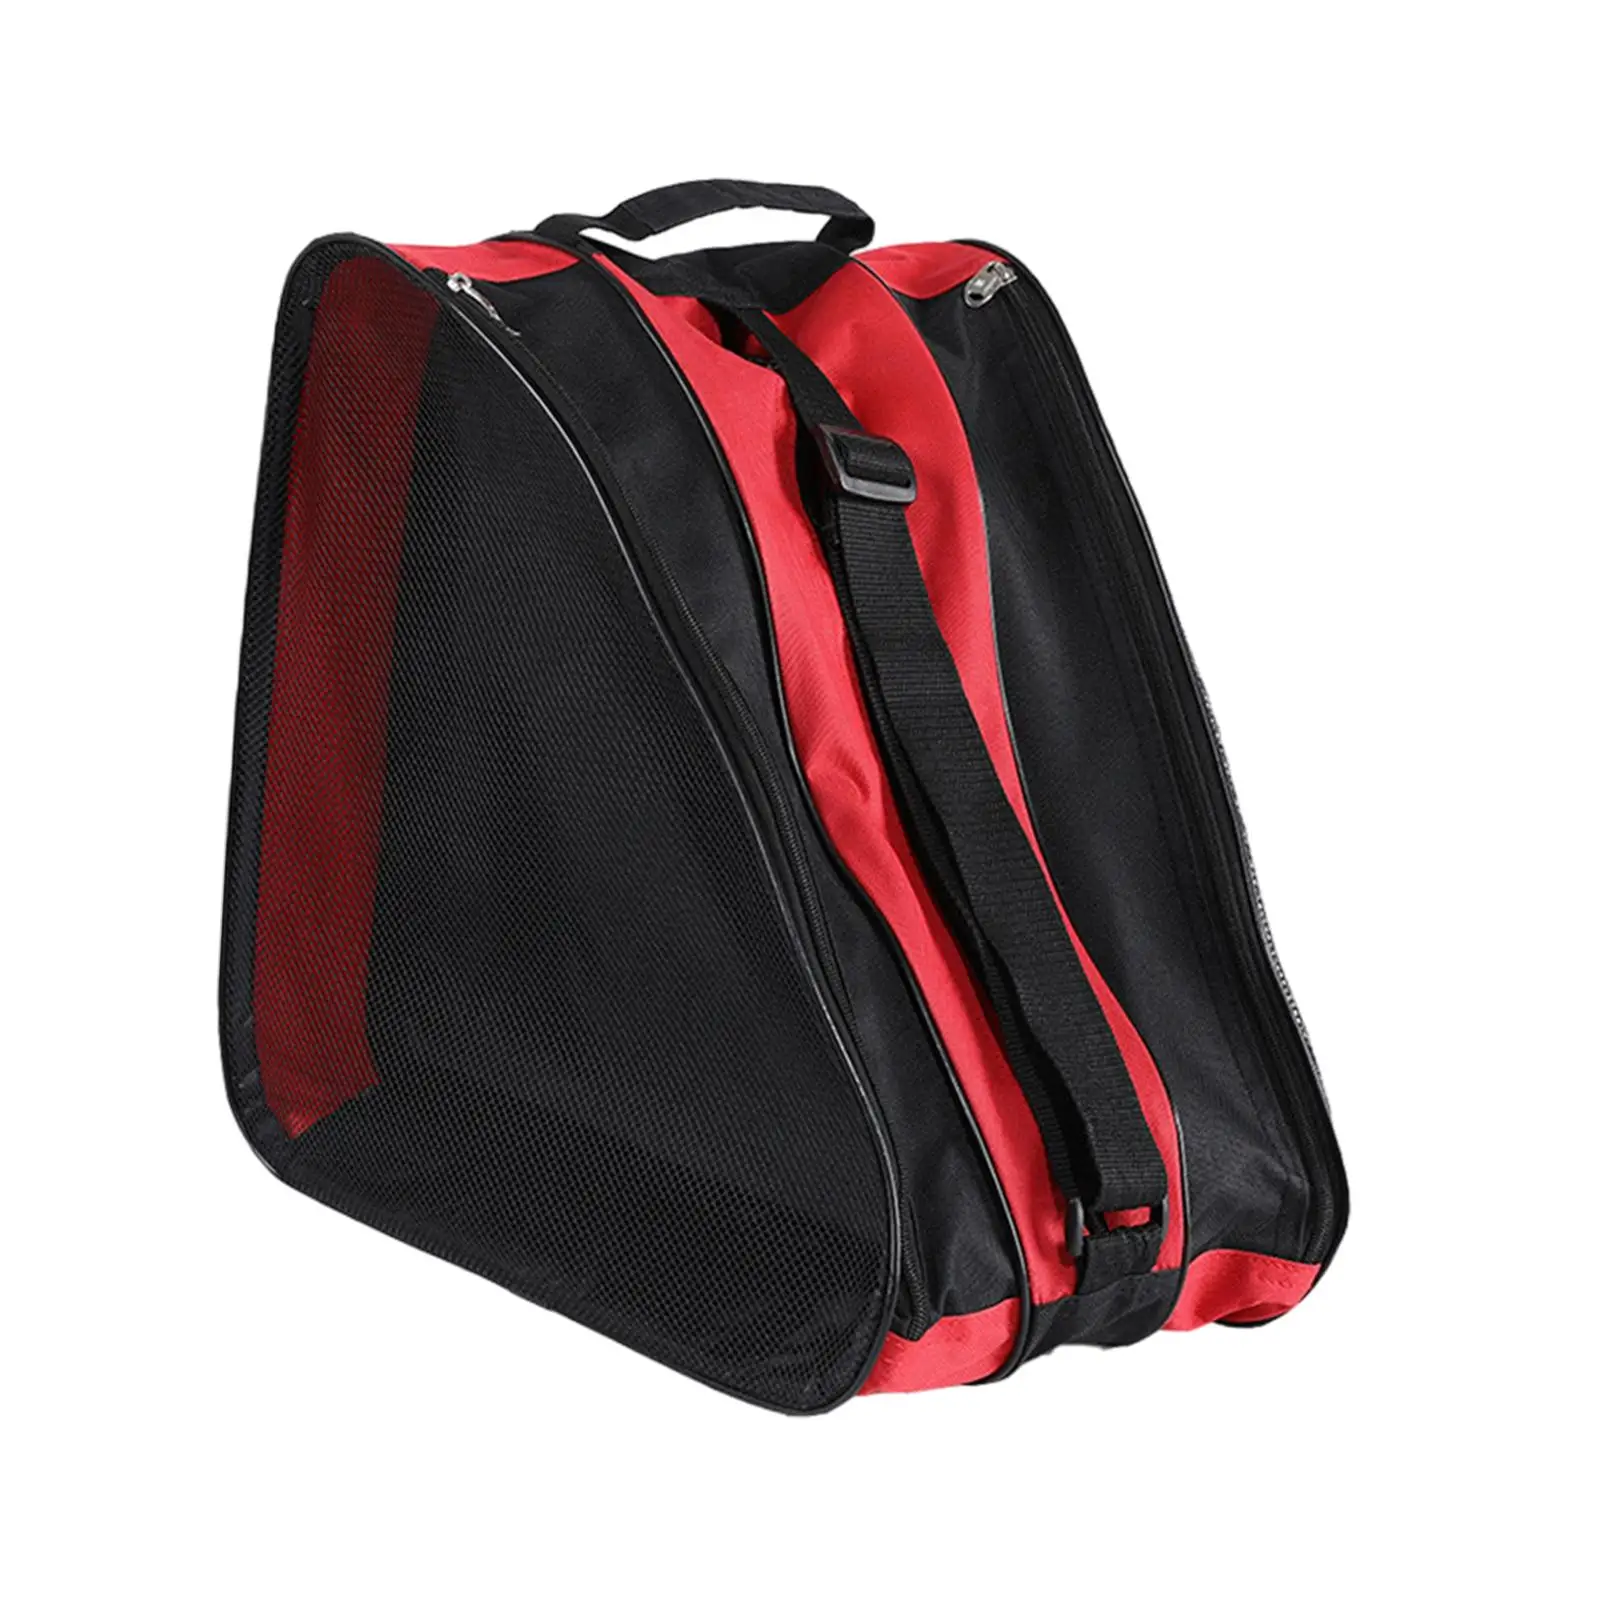 Skating Shoes Bag Large Capacity Adjustable Shoulder Strap Roller Skates Bag